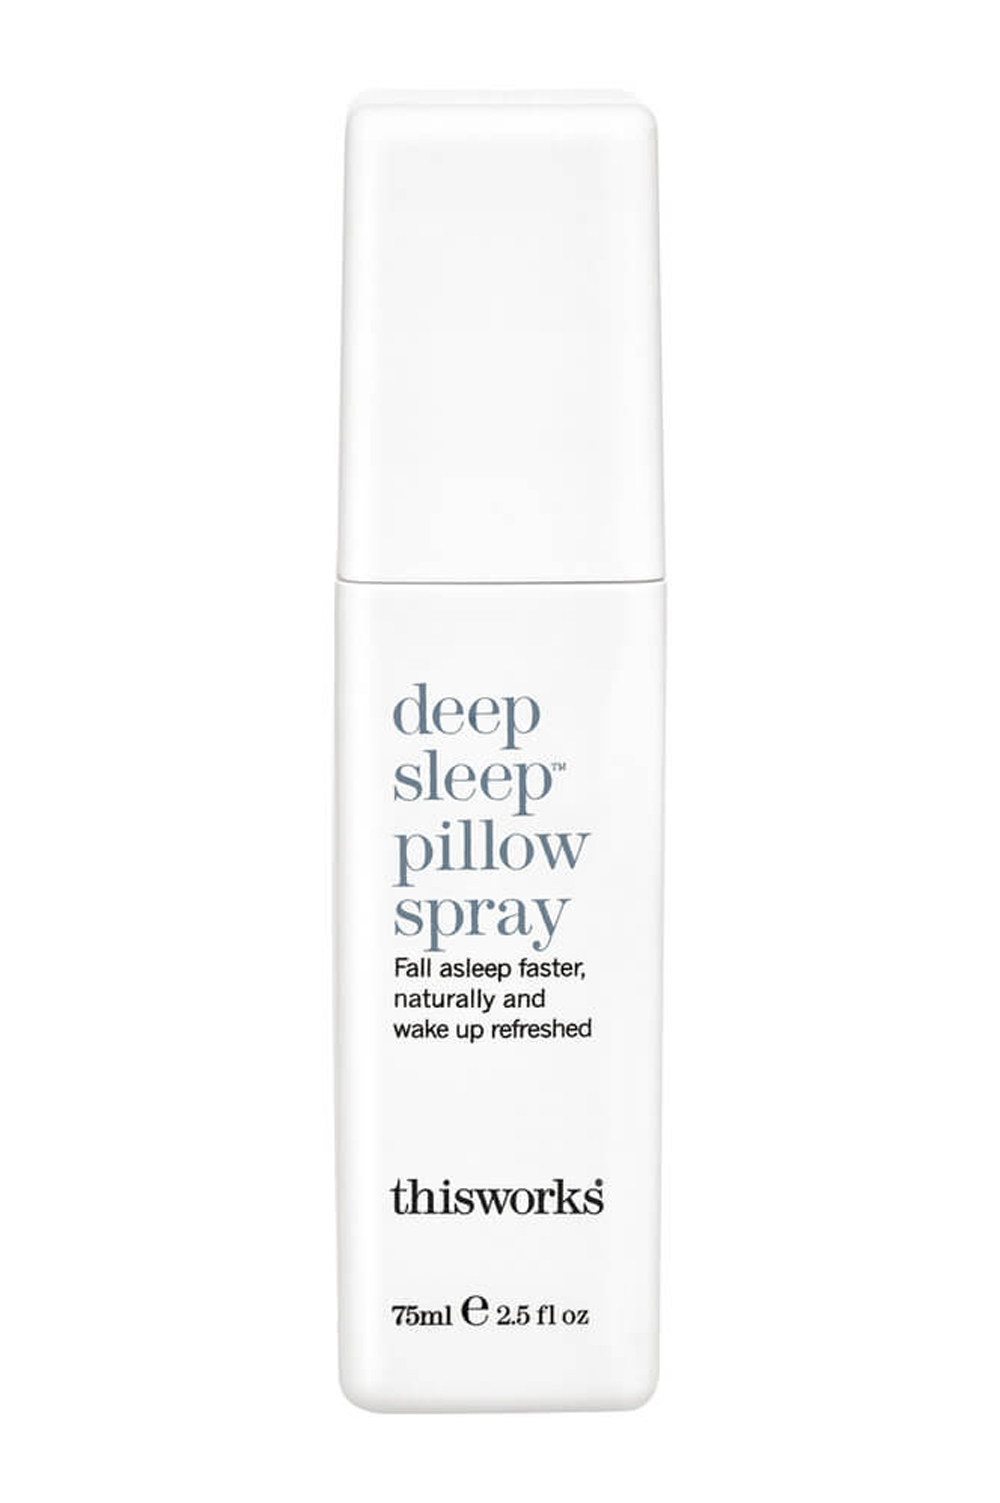 deep sleep pillow spray